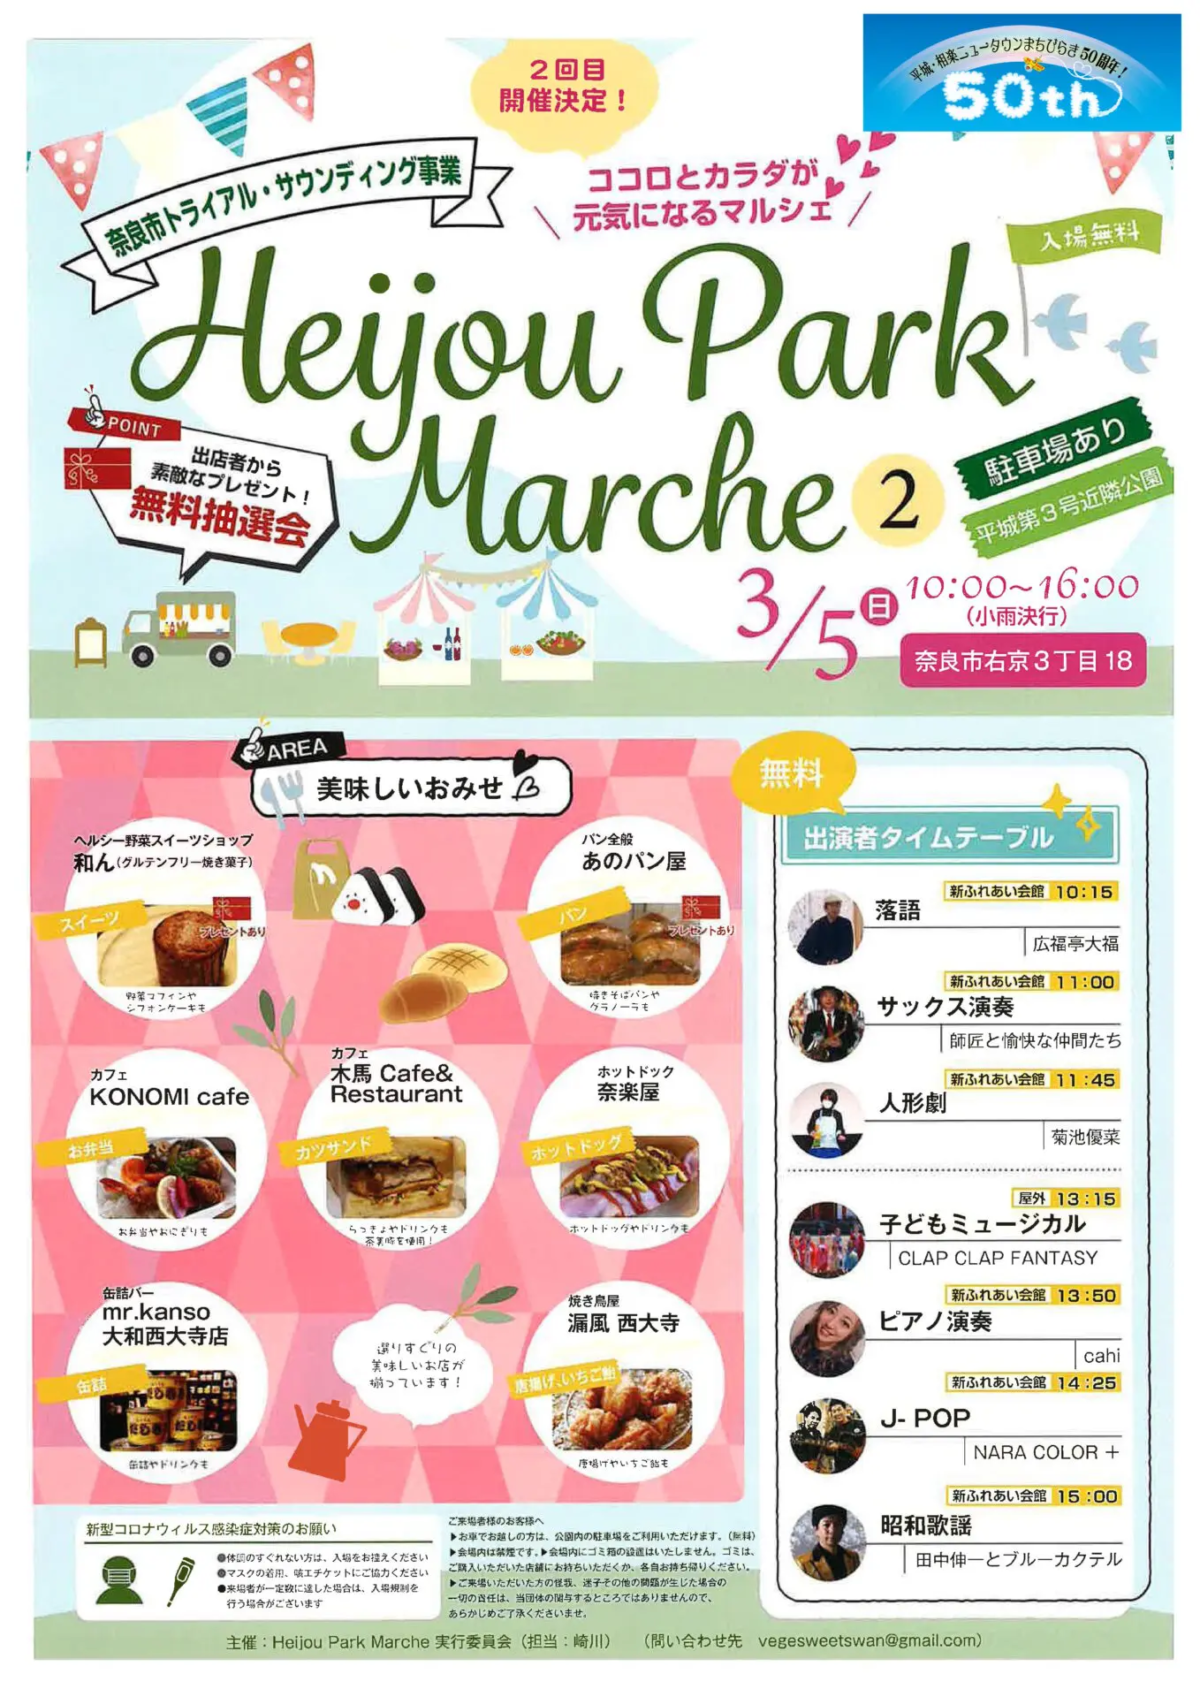 Heijou Park Marche